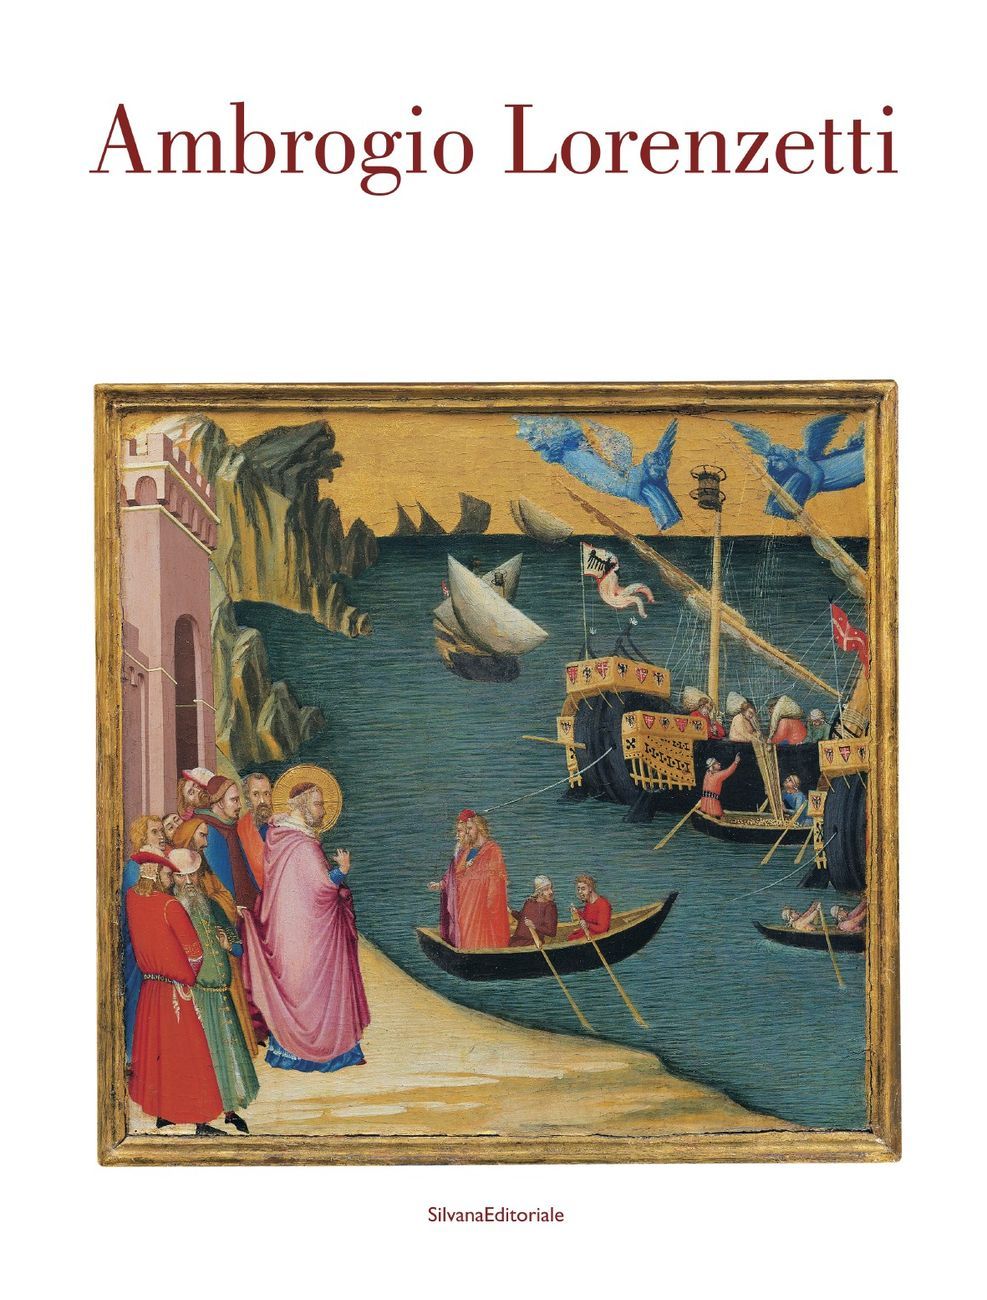 Ambrogio Lorenzetti (Silvana Editoriale, Cinisello Balsamo 2017)